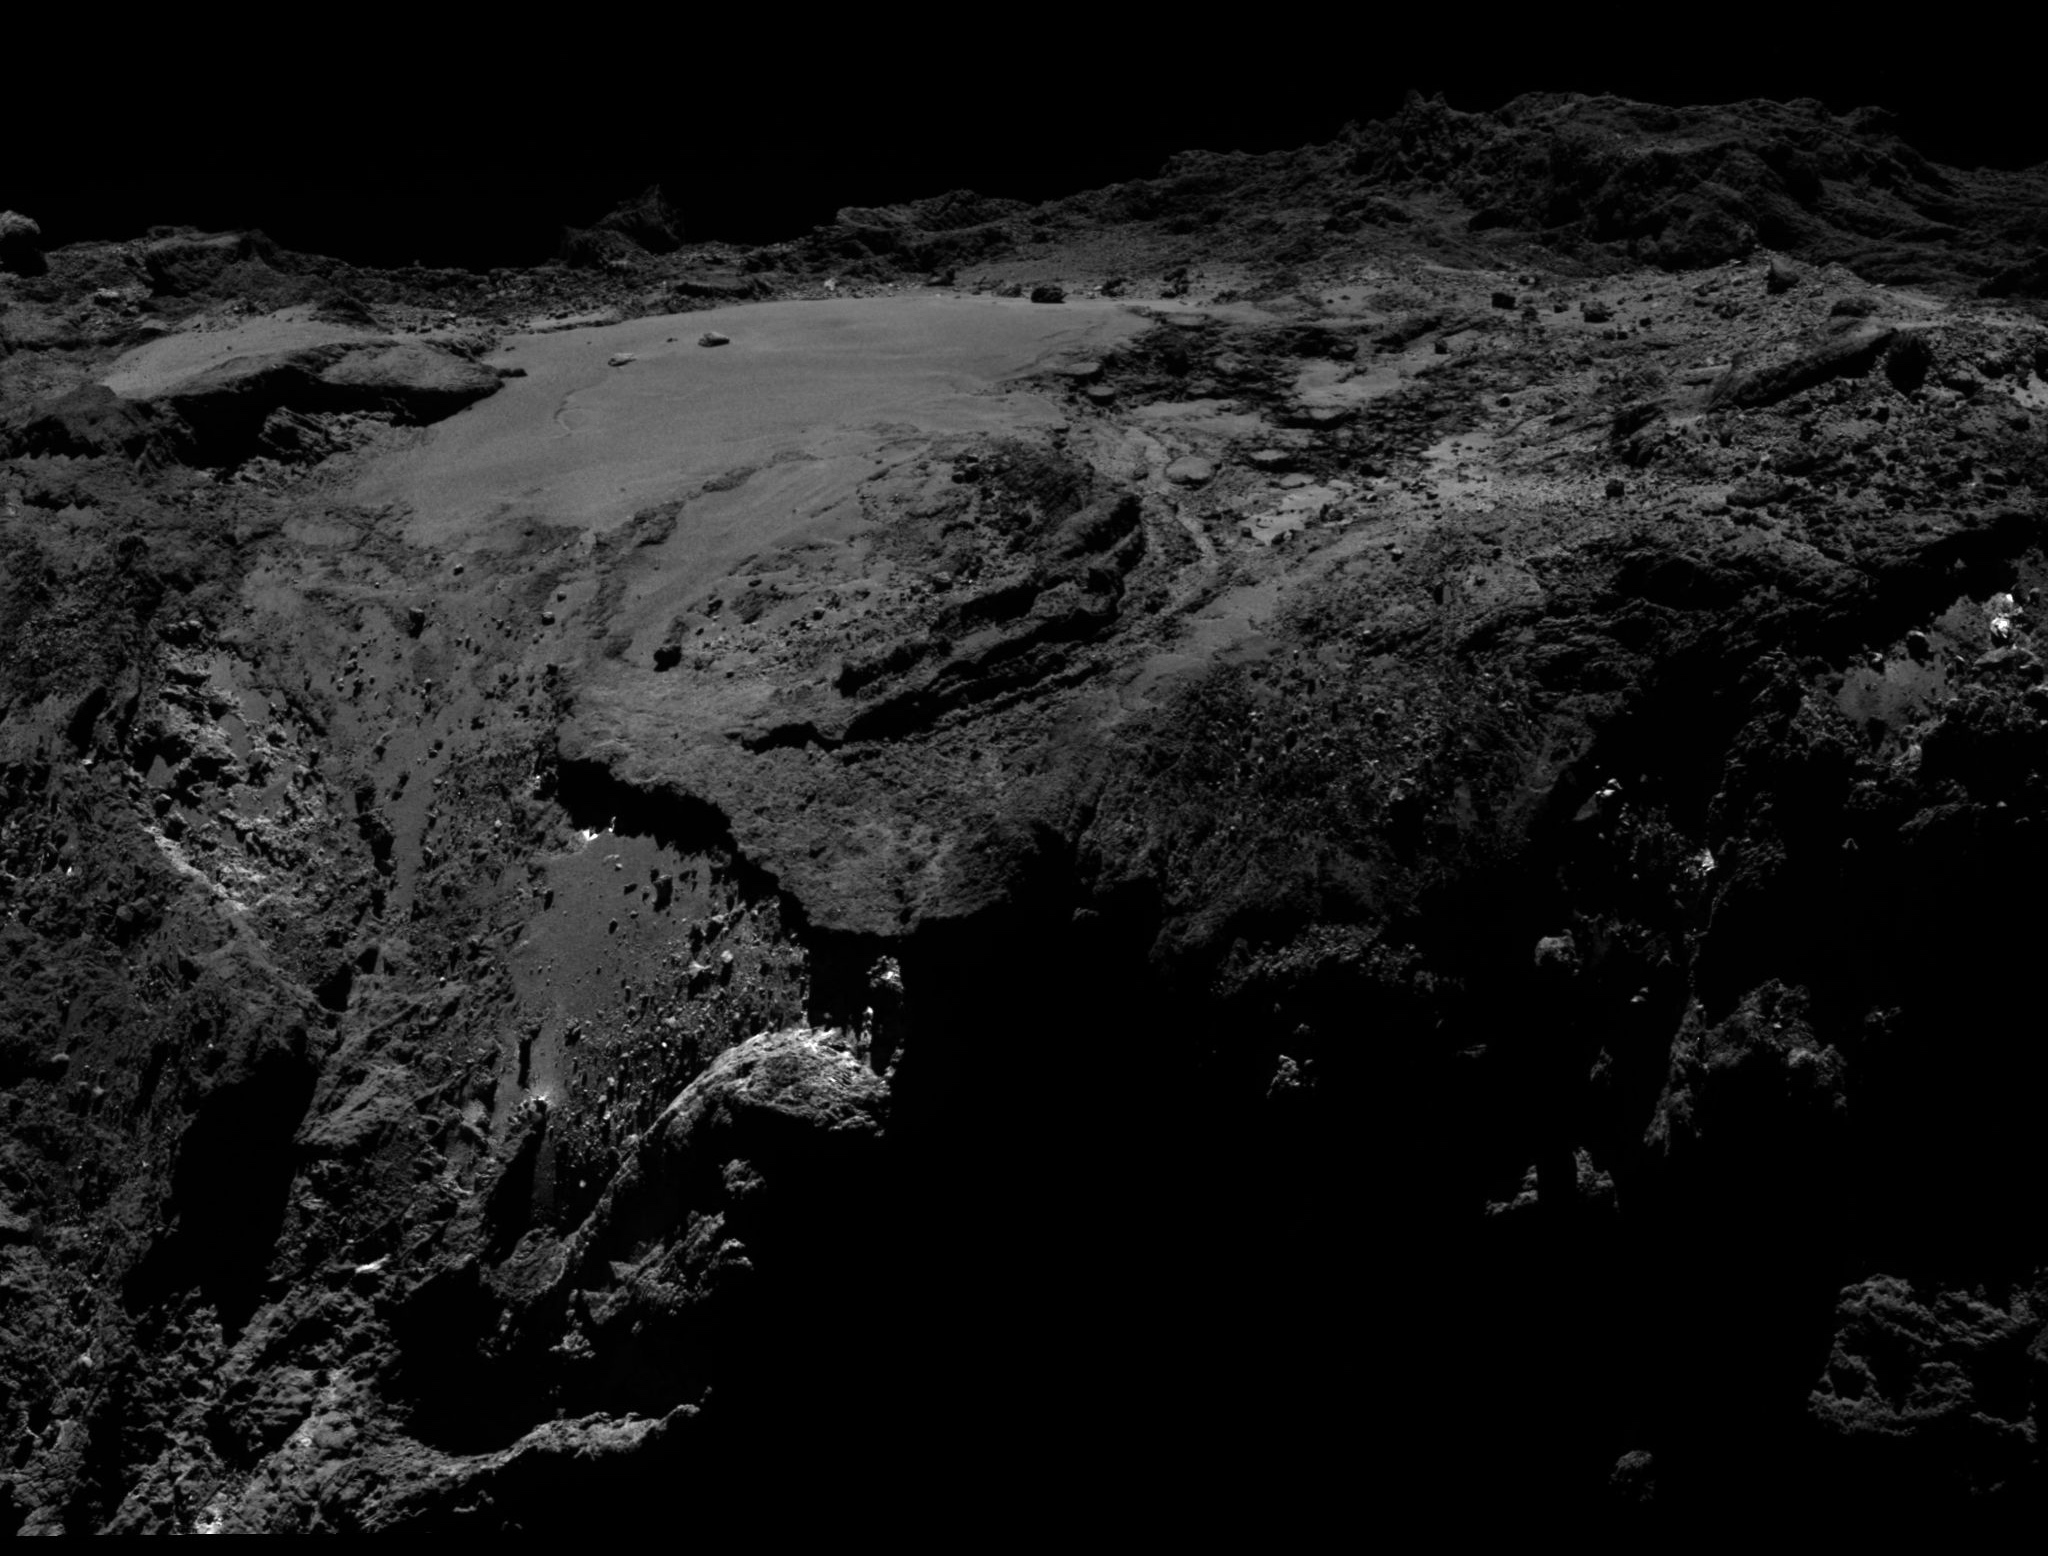 La région d’Imhotep, sur le grand lobe de Tchouri, imagée par Rosetta le 19 mars 2016 à 12 km de la surface. Quelques arpents de glace d’eau exposée ont été observés par la sonde européenne. © ESA/Rosetta/MPS for OSIRIS Team MPS/UPD/LAM/IAA/SSO/INTA/UPM/DASP/IDA